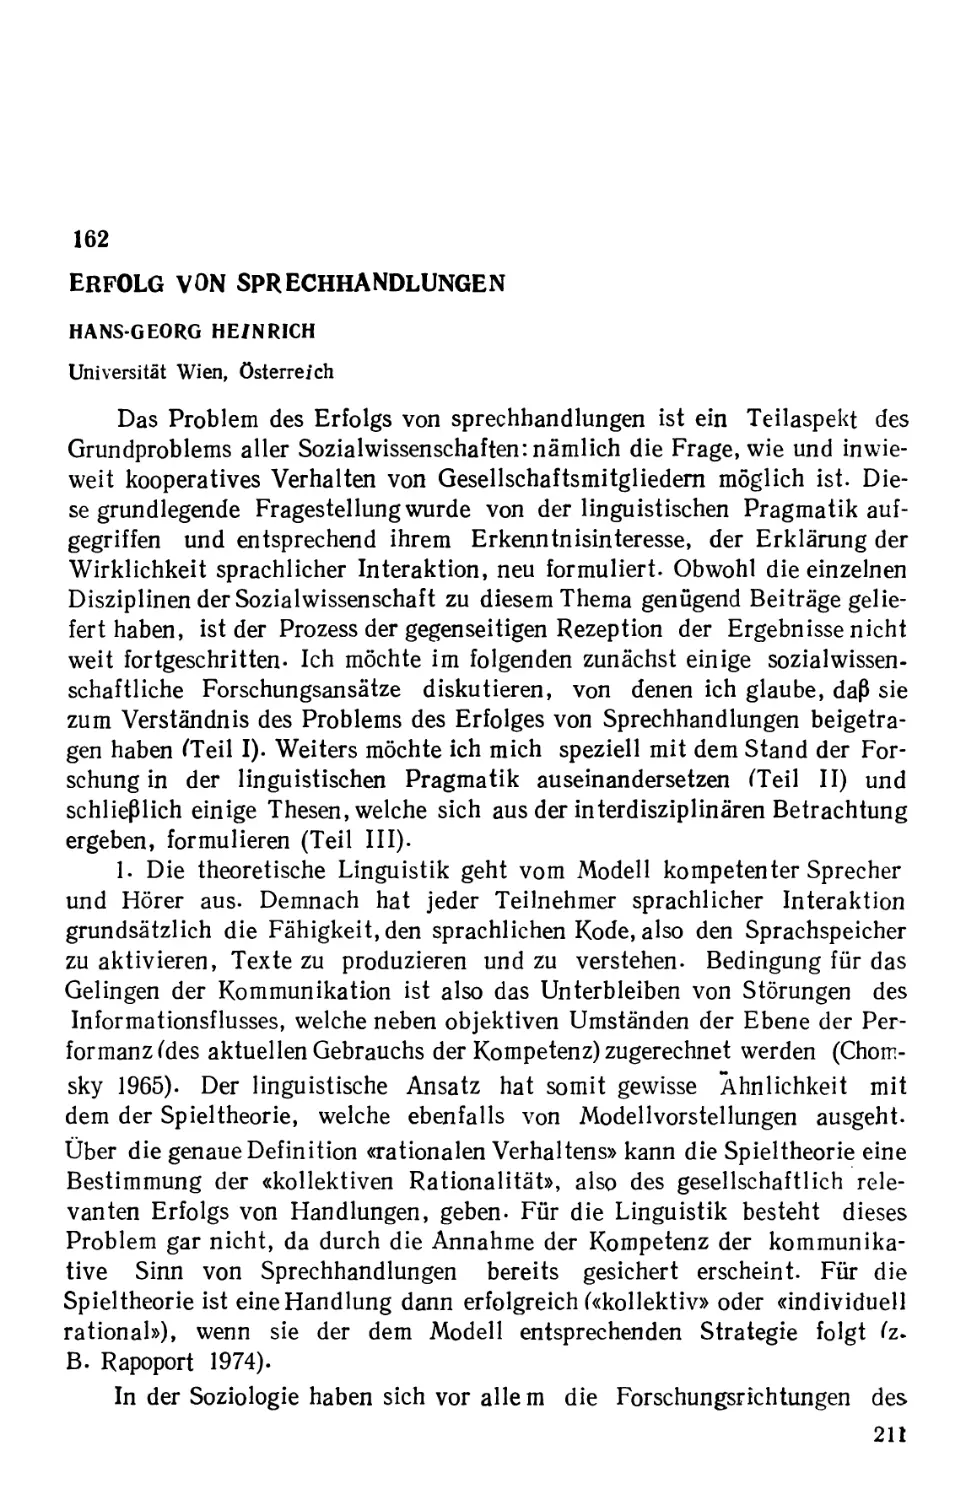 162. О факторах успешности речевой деятельности - Г. Гайнрих
162. Erfolg von Sprechhandlungen - Hans-Georg Heinrich